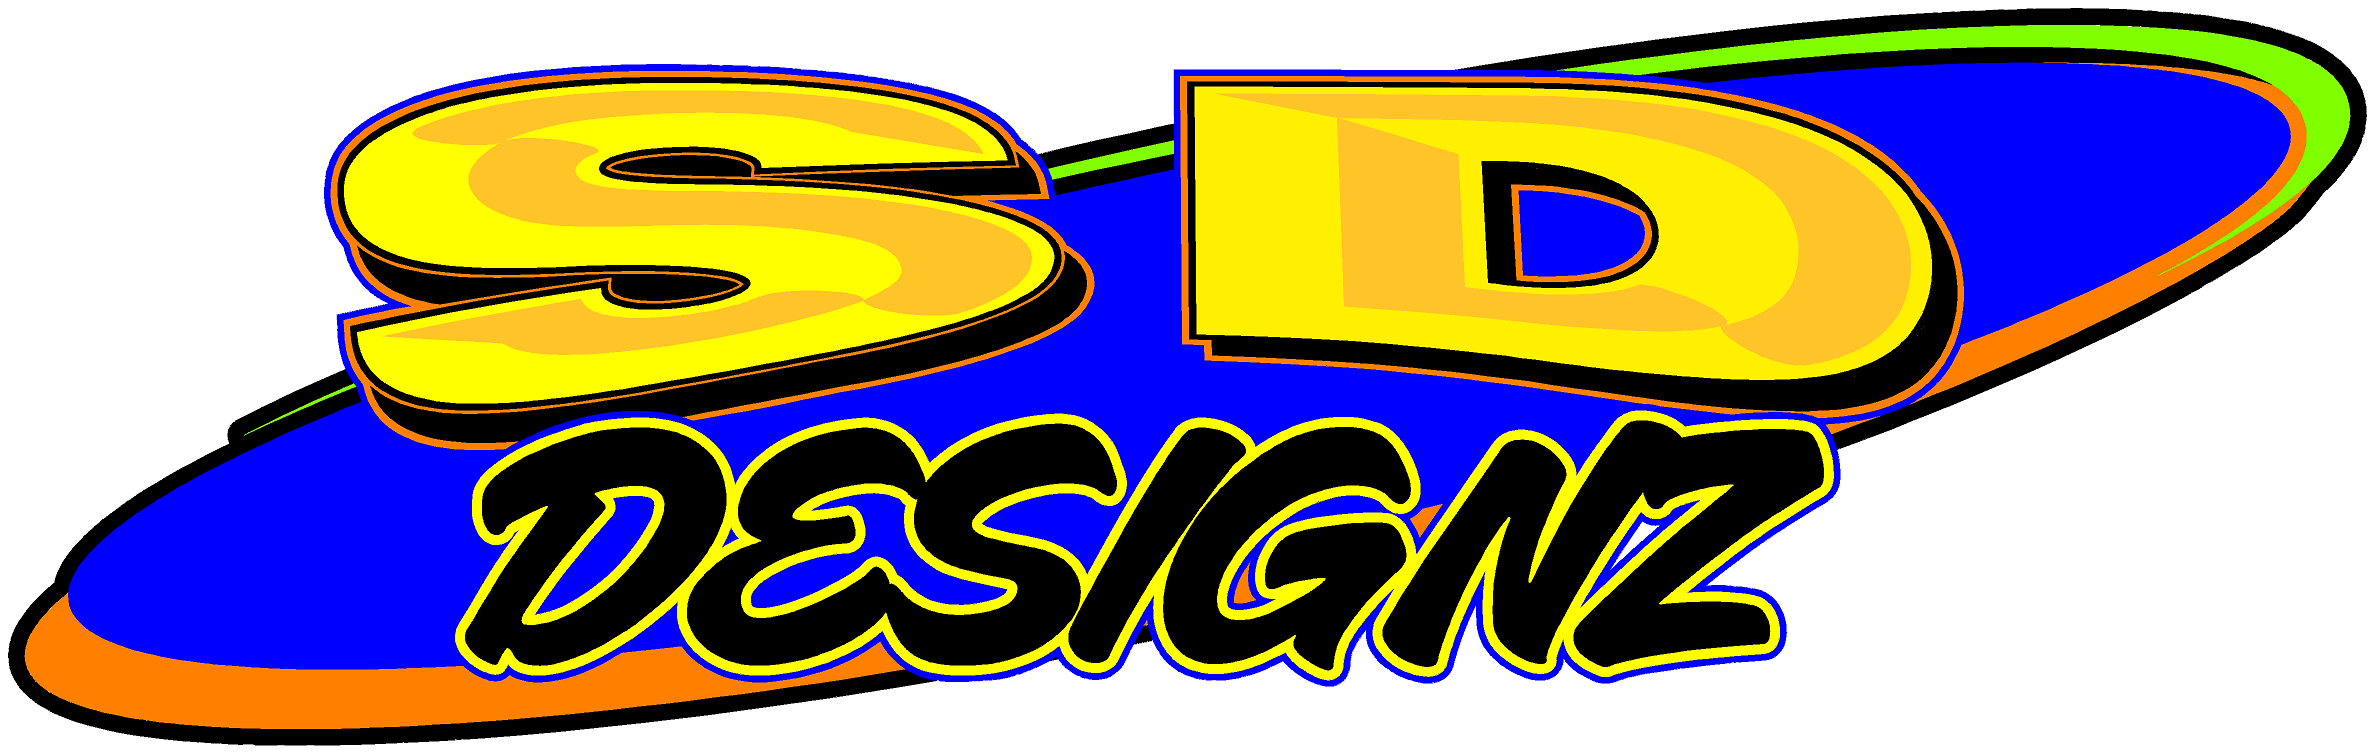 2020-11-17 SD Logo.png